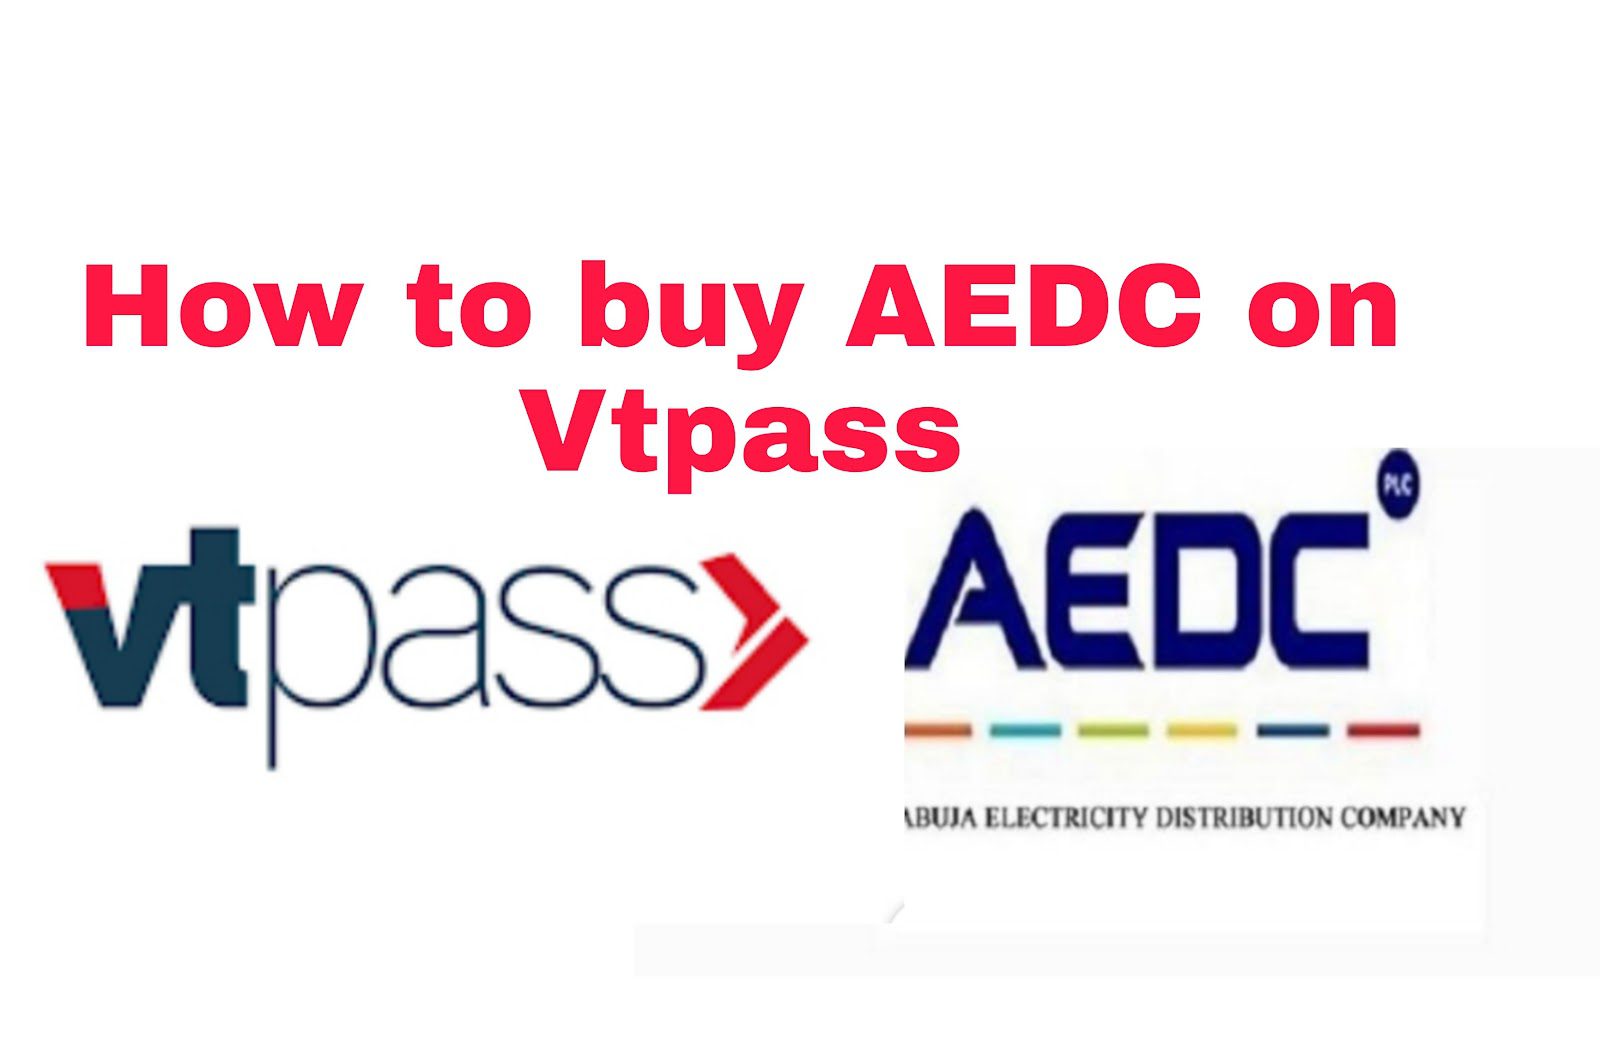 VTPass AEDC; How To Buy AEDC On Vtpass